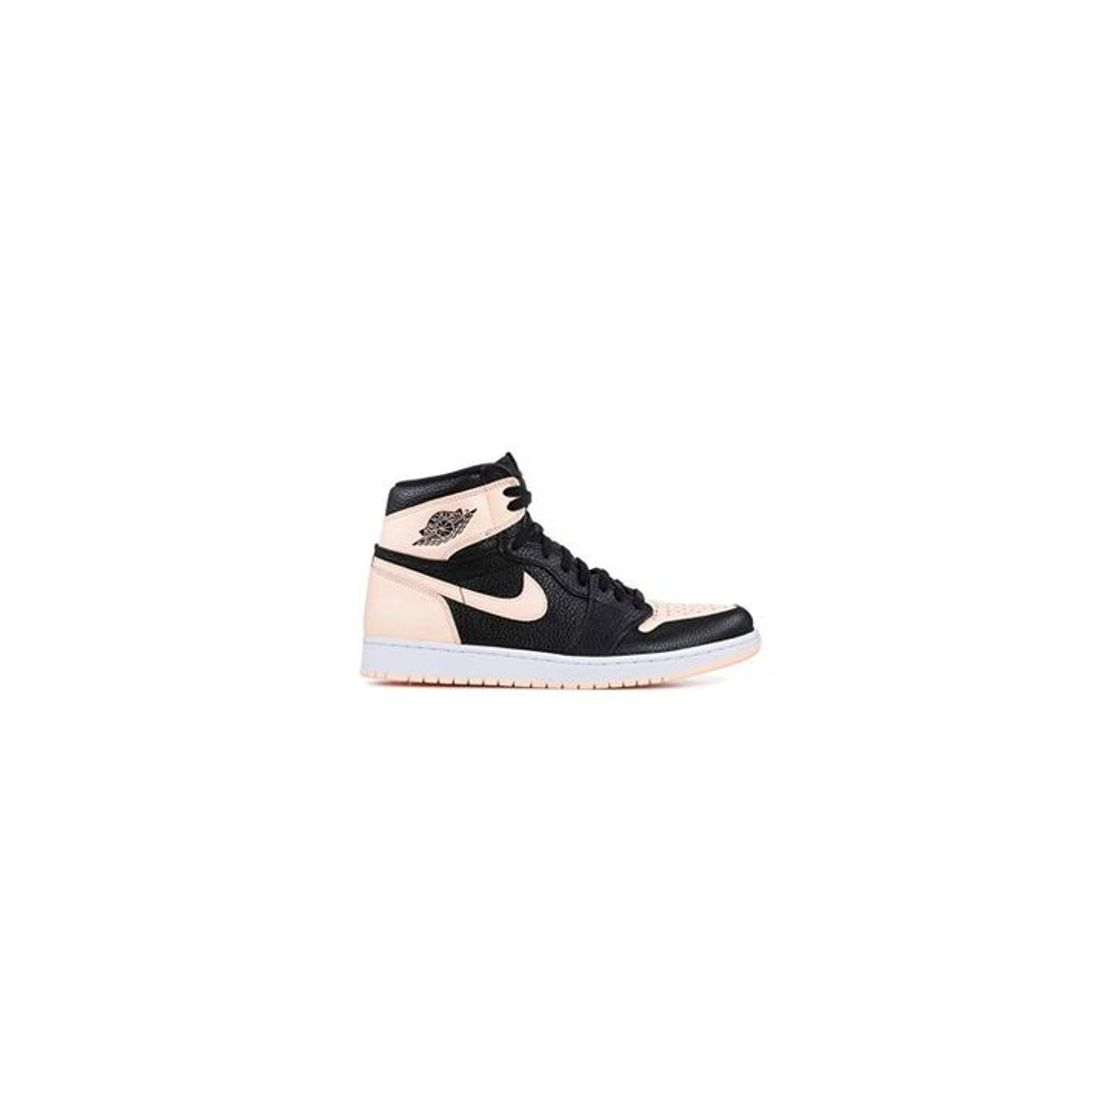 Nike Air Jordan 1 Retro High OG 555088-081 Zapatos para Hombre, Negro